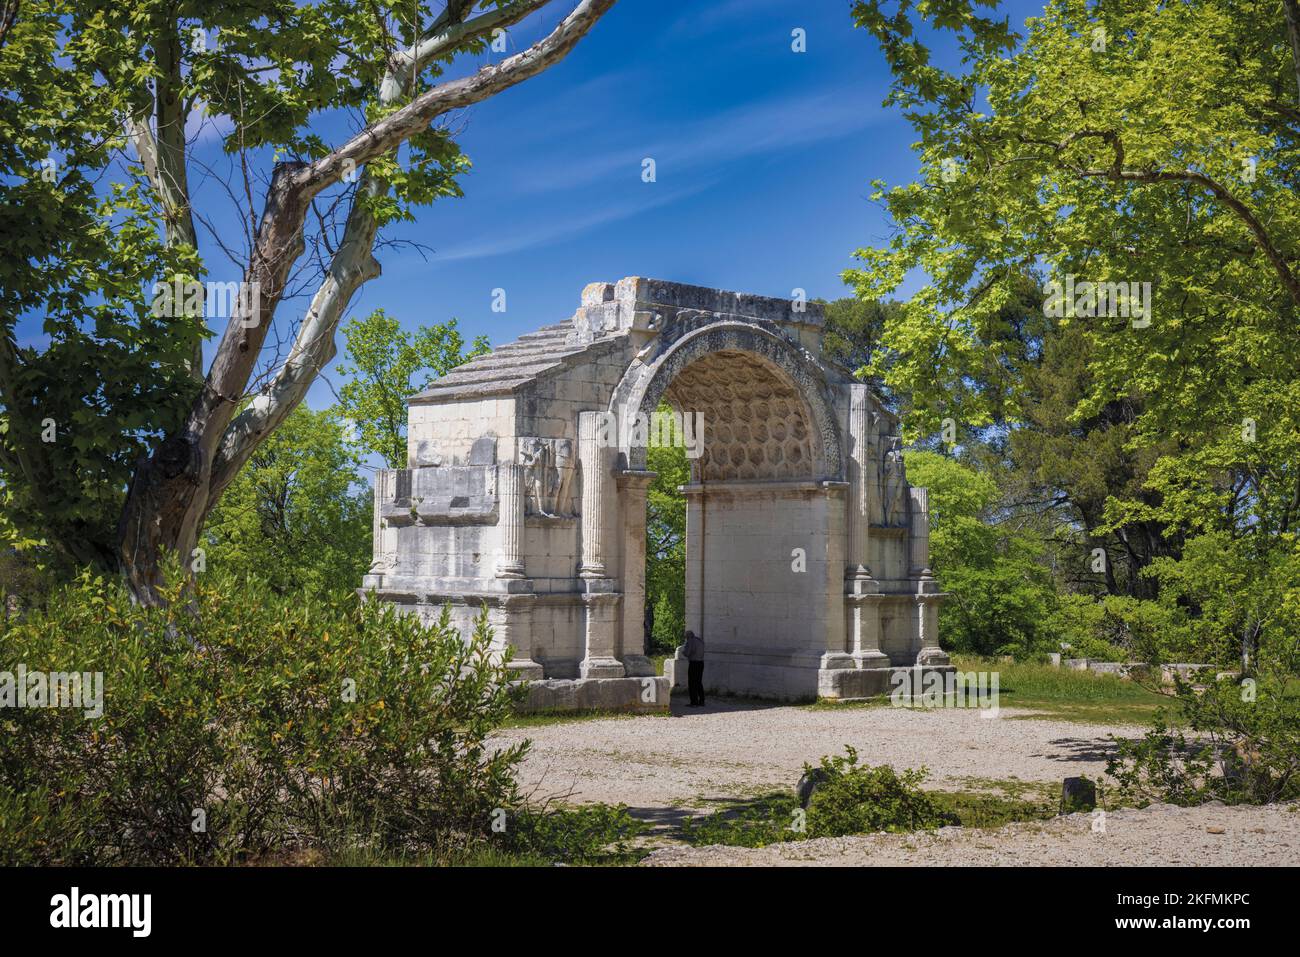 Saint-Rémy-de-Provence, Bouches-du-Rhône, Provence, Frankreich. Der Arc Municipal, ein Triumphbogen, der der Eingang zur römischen Stadt Glanum war. Stockfoto